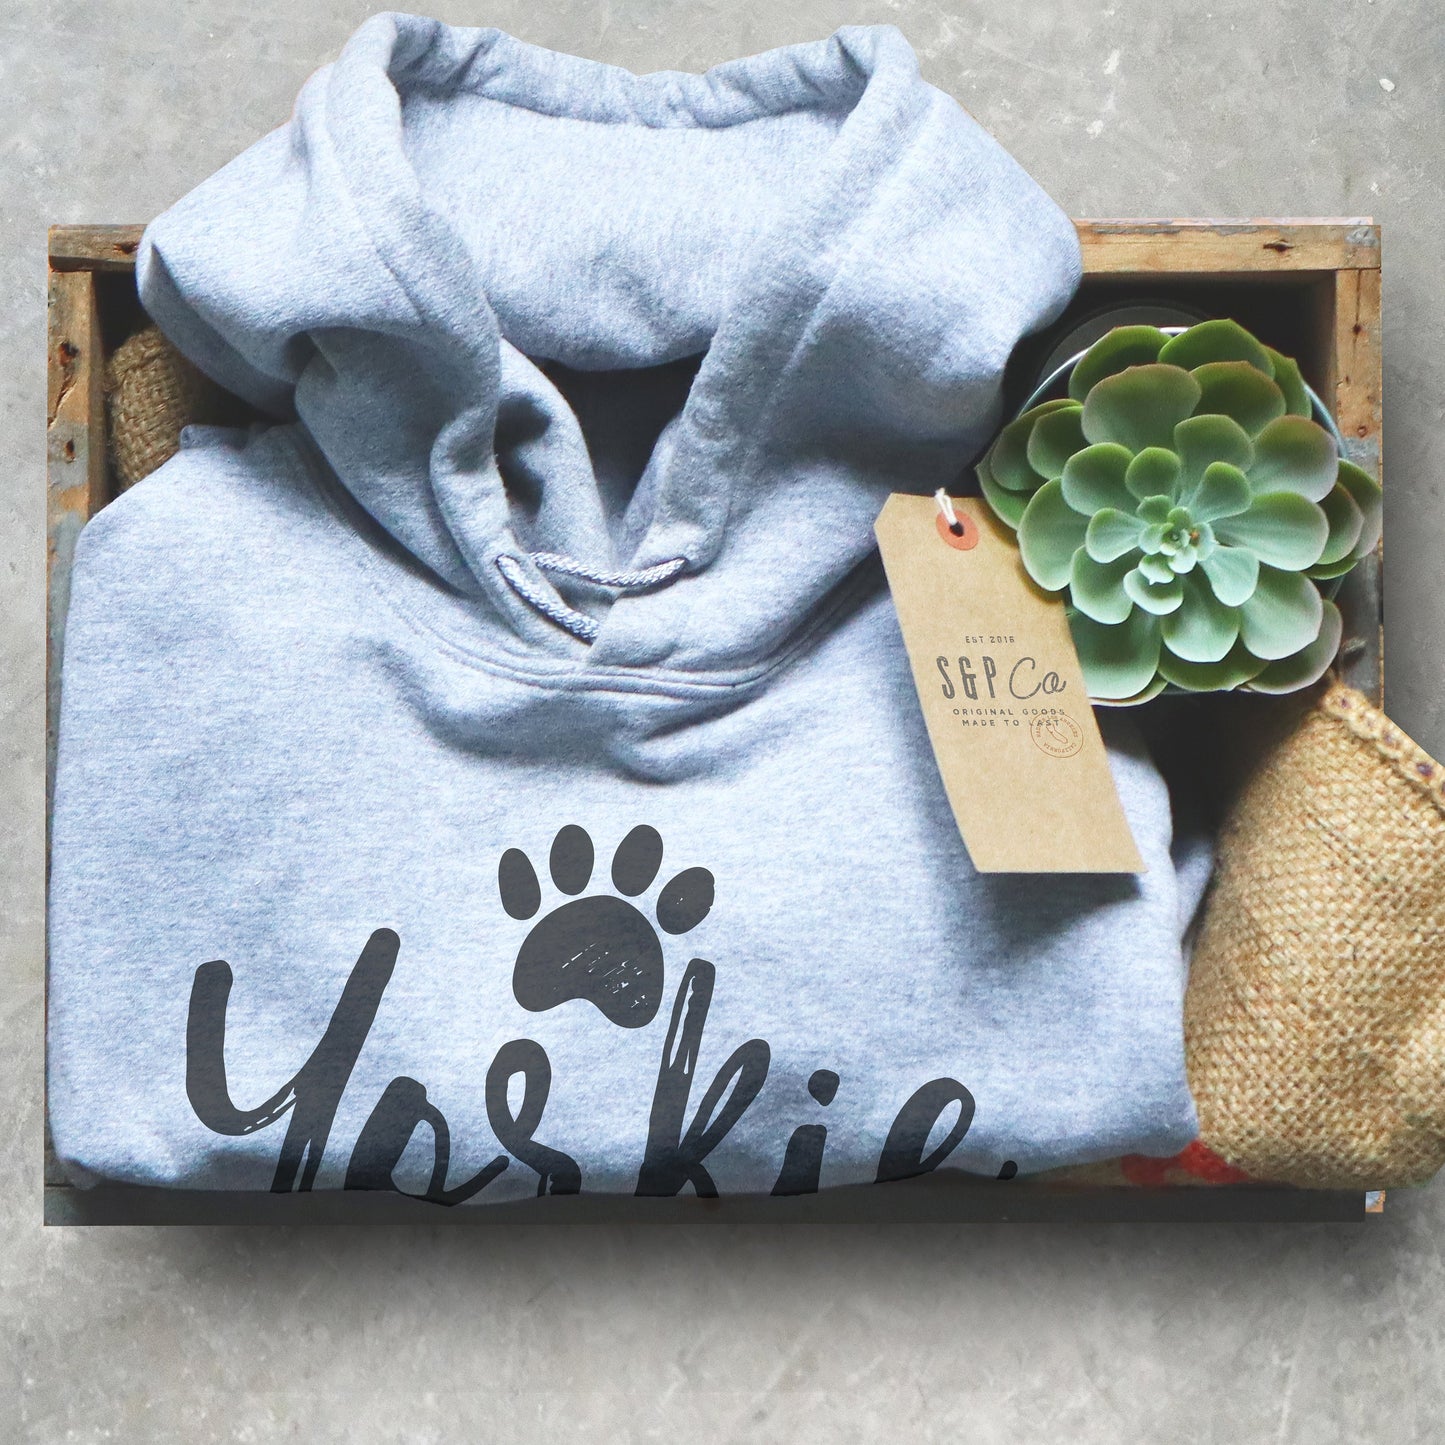 Yorkie Grandma Hoodie - Yorkie Shirt, Yorkie Gifts, Yorkie Print, Yorkshire Terrier Gift, Yorkshire Terrier Shirt, Yorkie Owner